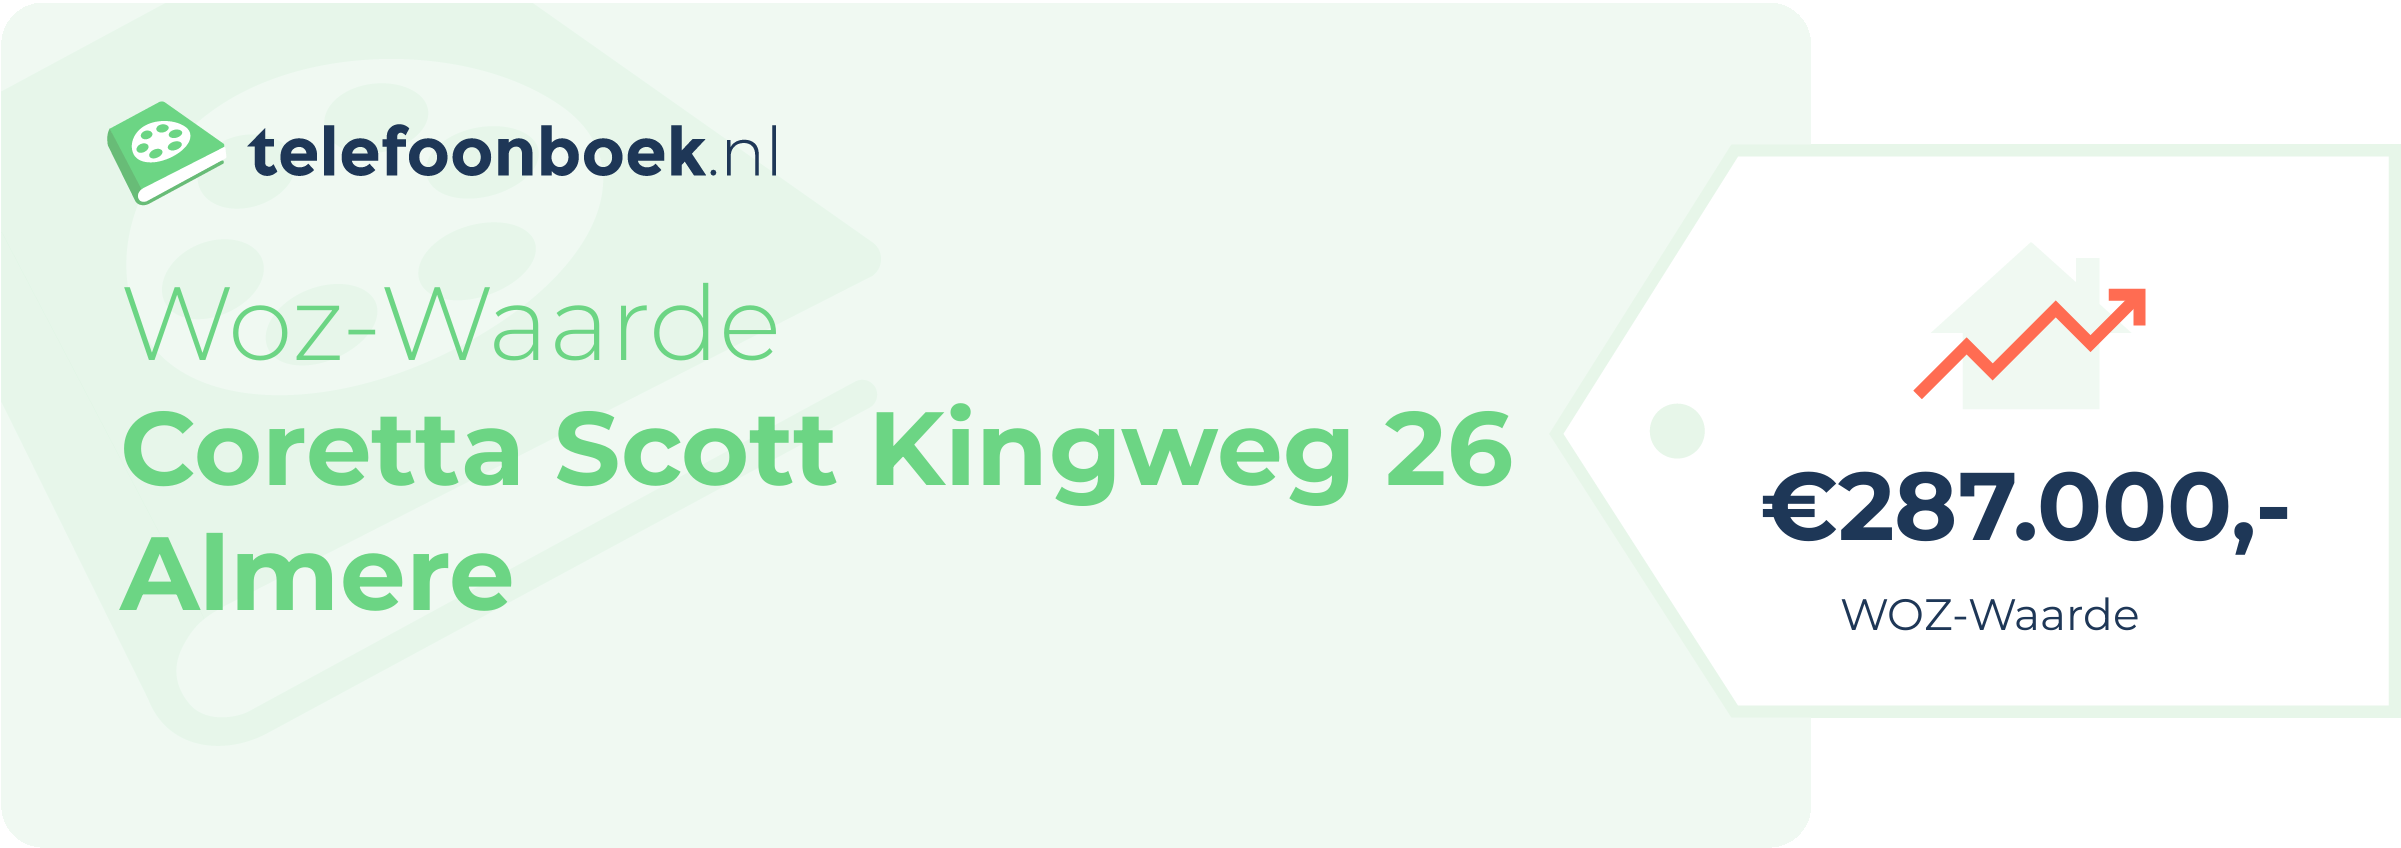 WOZ-waarde Coretta Scott Kingweg 26 Almere